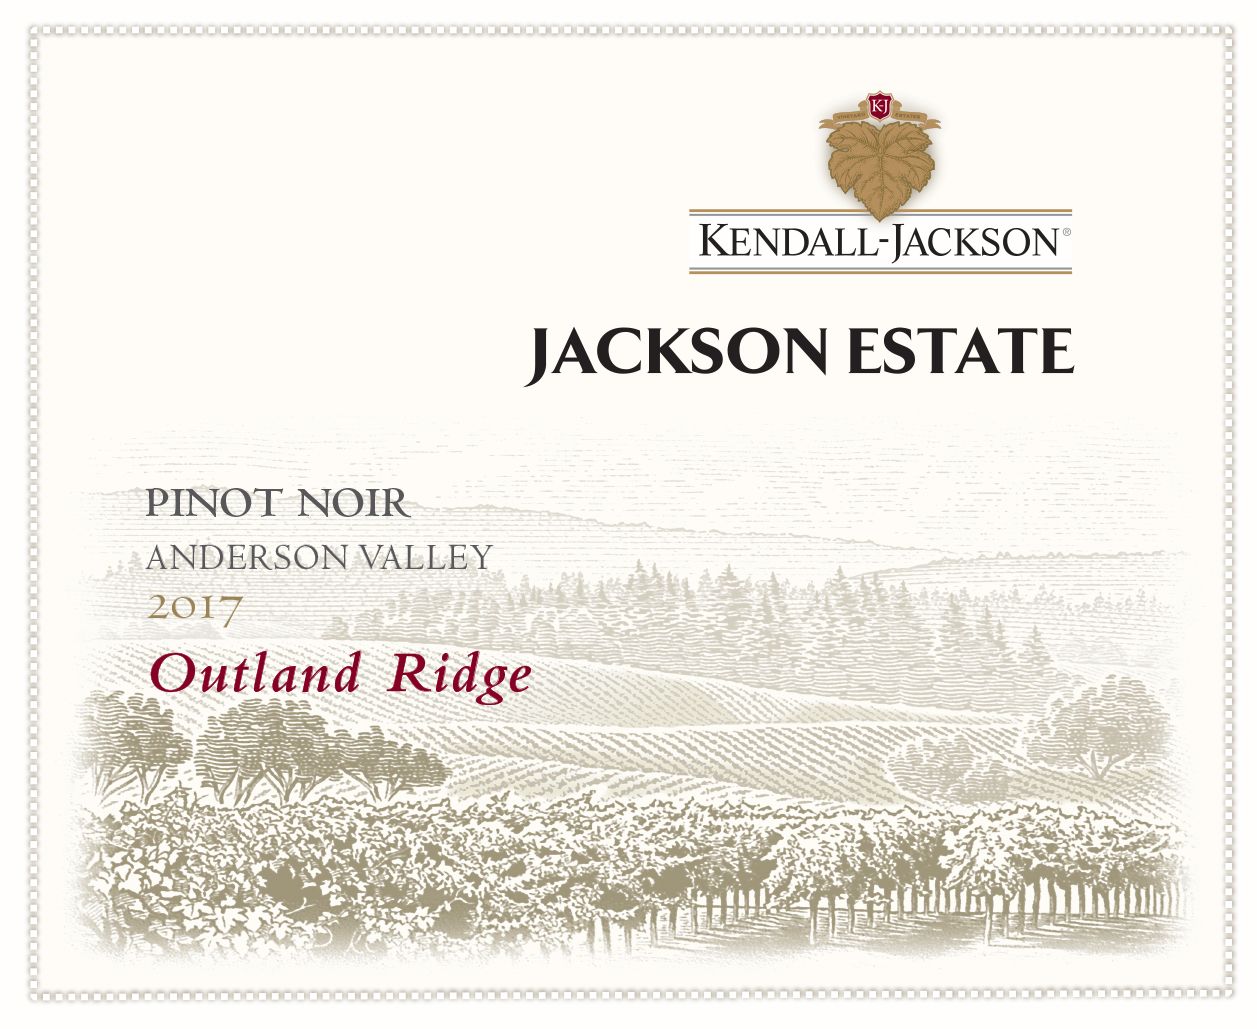 Kendall-Jackson Jackson Estate Outland Ridge Pinot Noir 2017